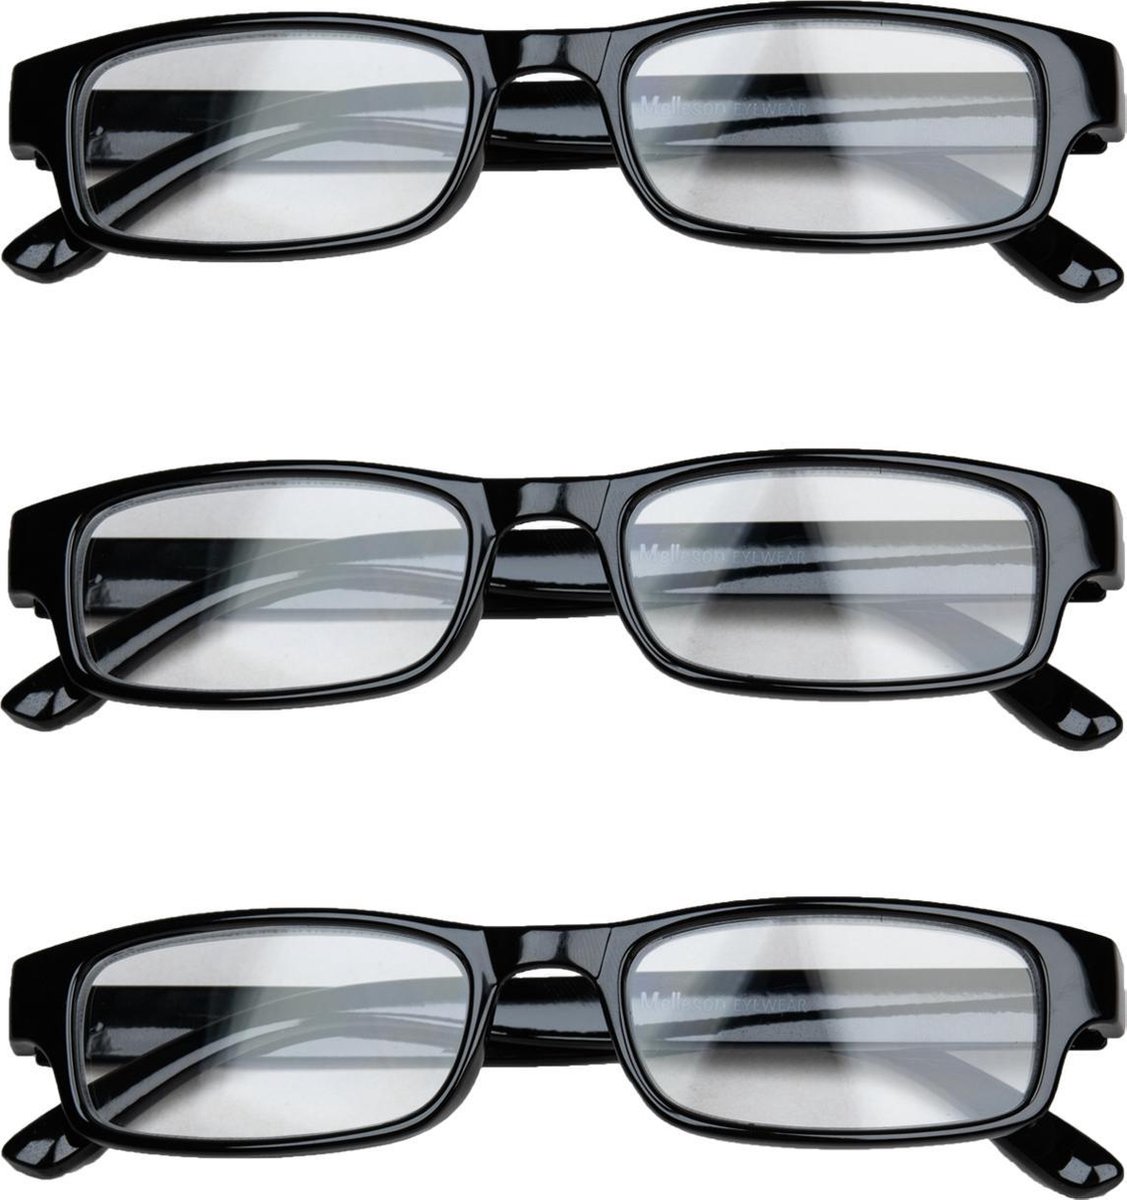 Melleson Eyewear overkijk leesbril zwart +2.50 - 3 stuks + 3 pouches - leesbrillen